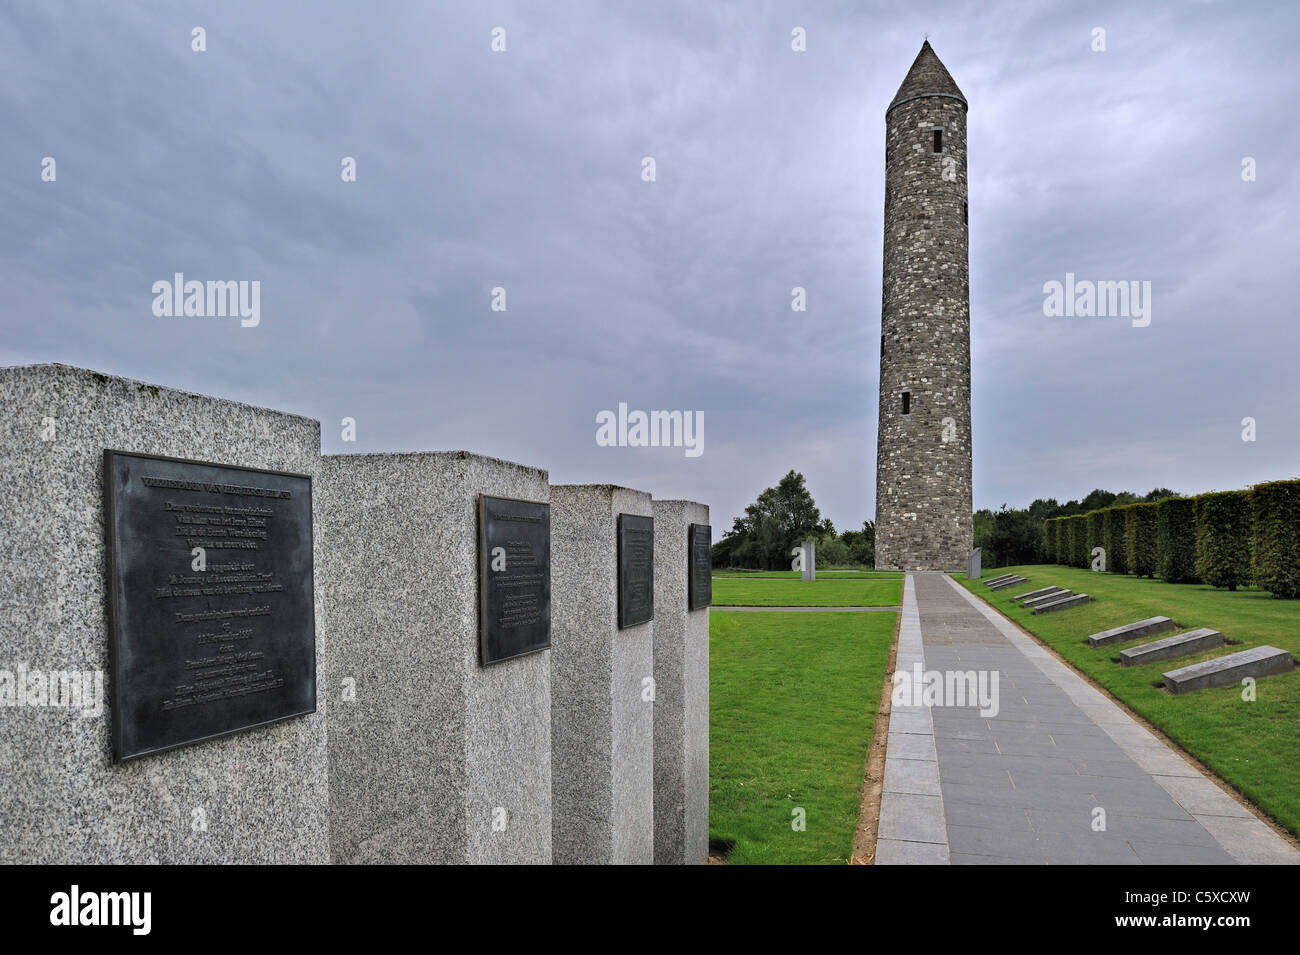 L'île d'Irlande Parc de la paix et tour de l'Irlande de la paix, de la Première Guerre mondiale 14-18 site à Messines, Belgique Banque D'Images